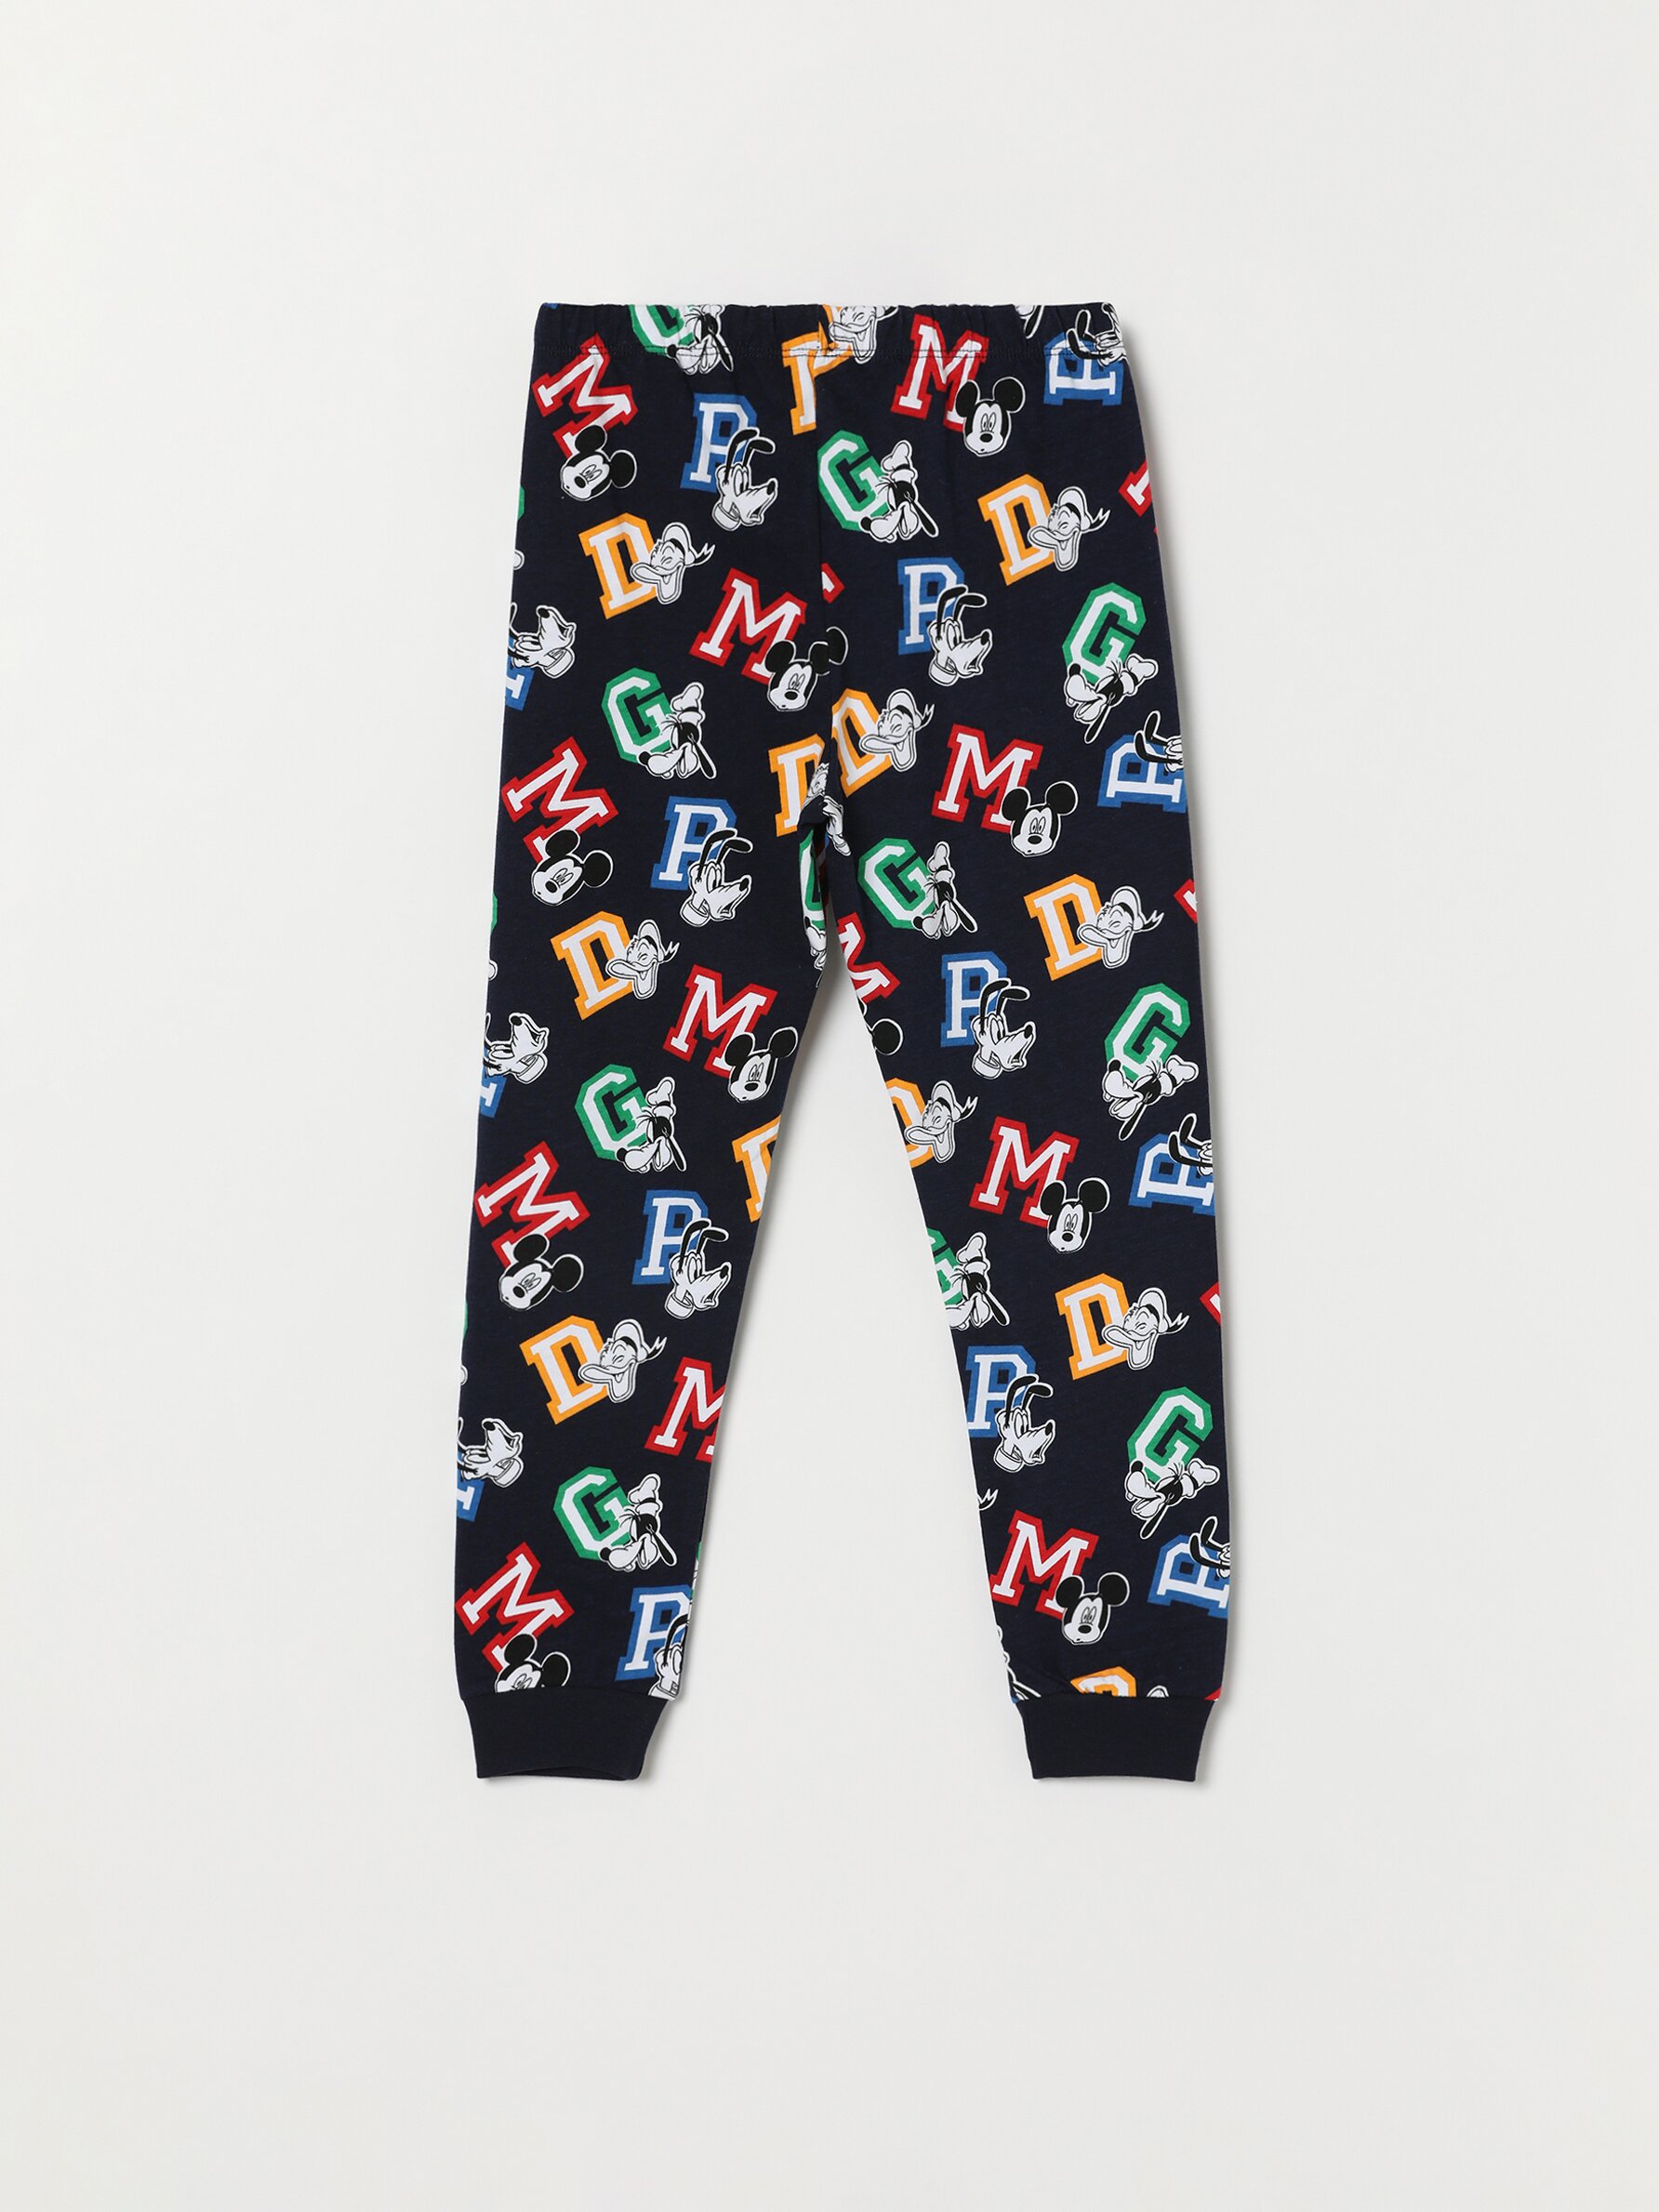 Mickey Mouse Nightwear Official Merchandise Disney Mickey Sketch Men's Long Pyjamas Set Gift Idea for Men 